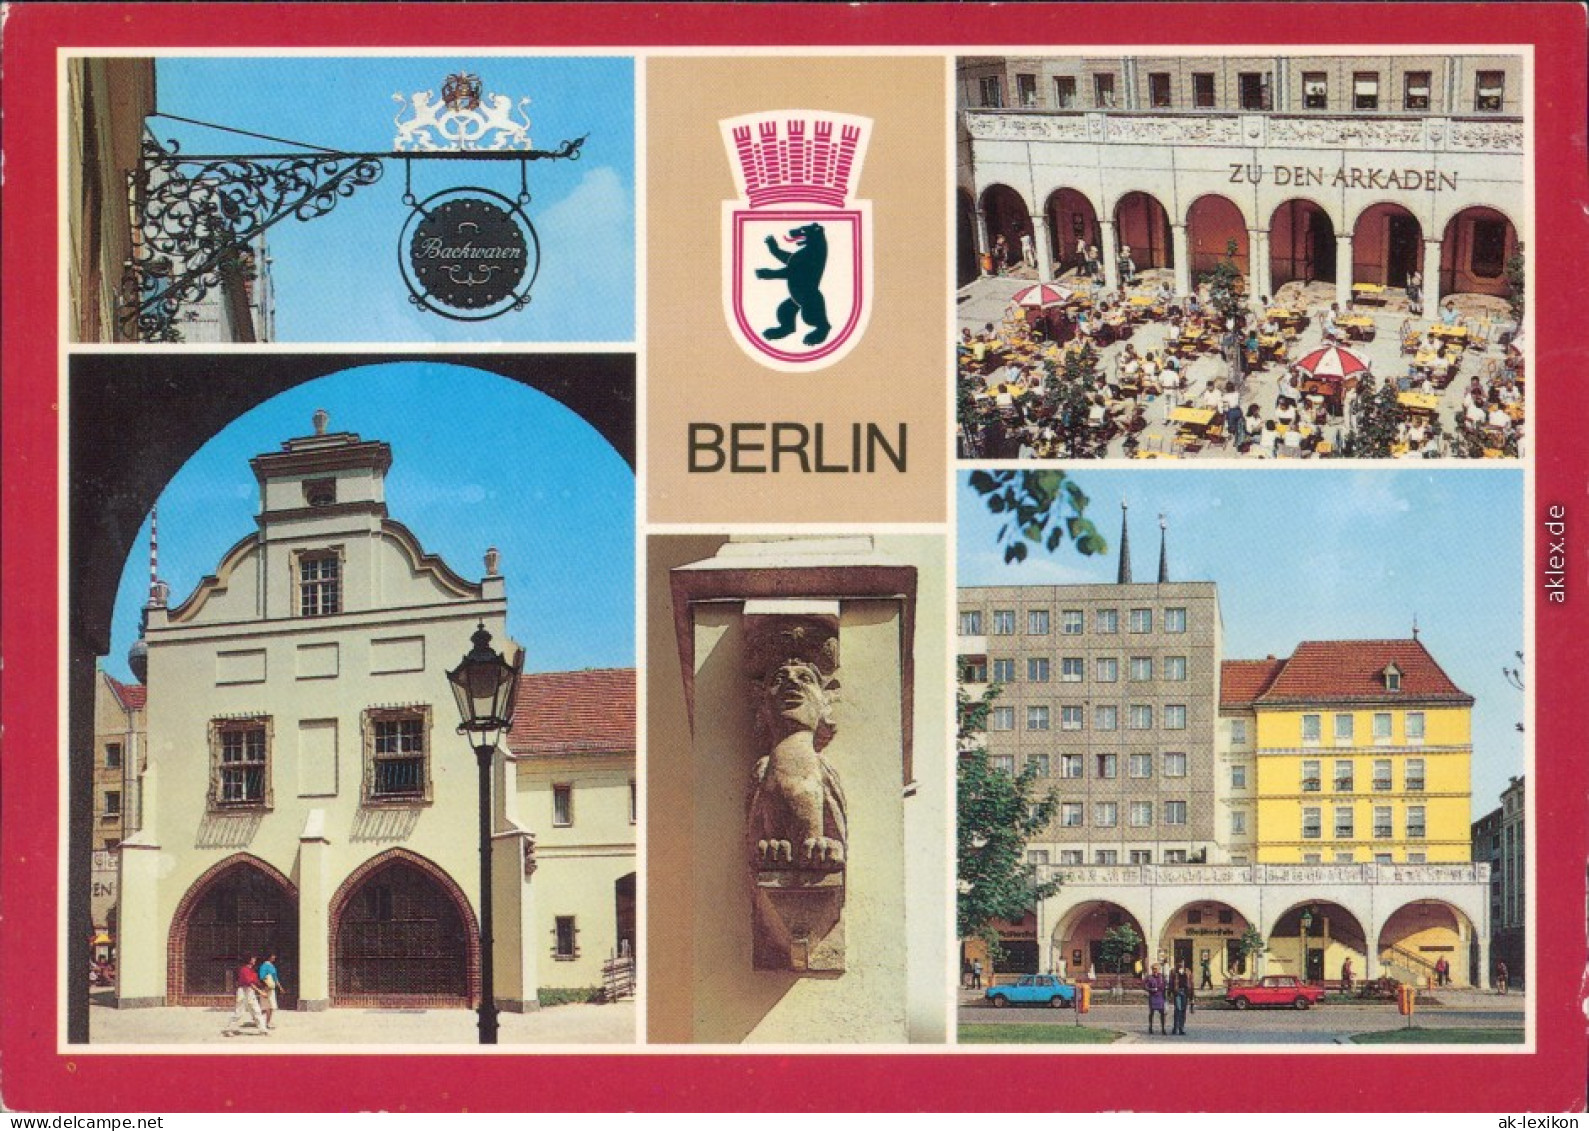 Berlin  Gerichtslaube, Gaststätte "Weißbierstube" Und "Mutter Hoppe" 1988 - Otros & Sin Clasificación